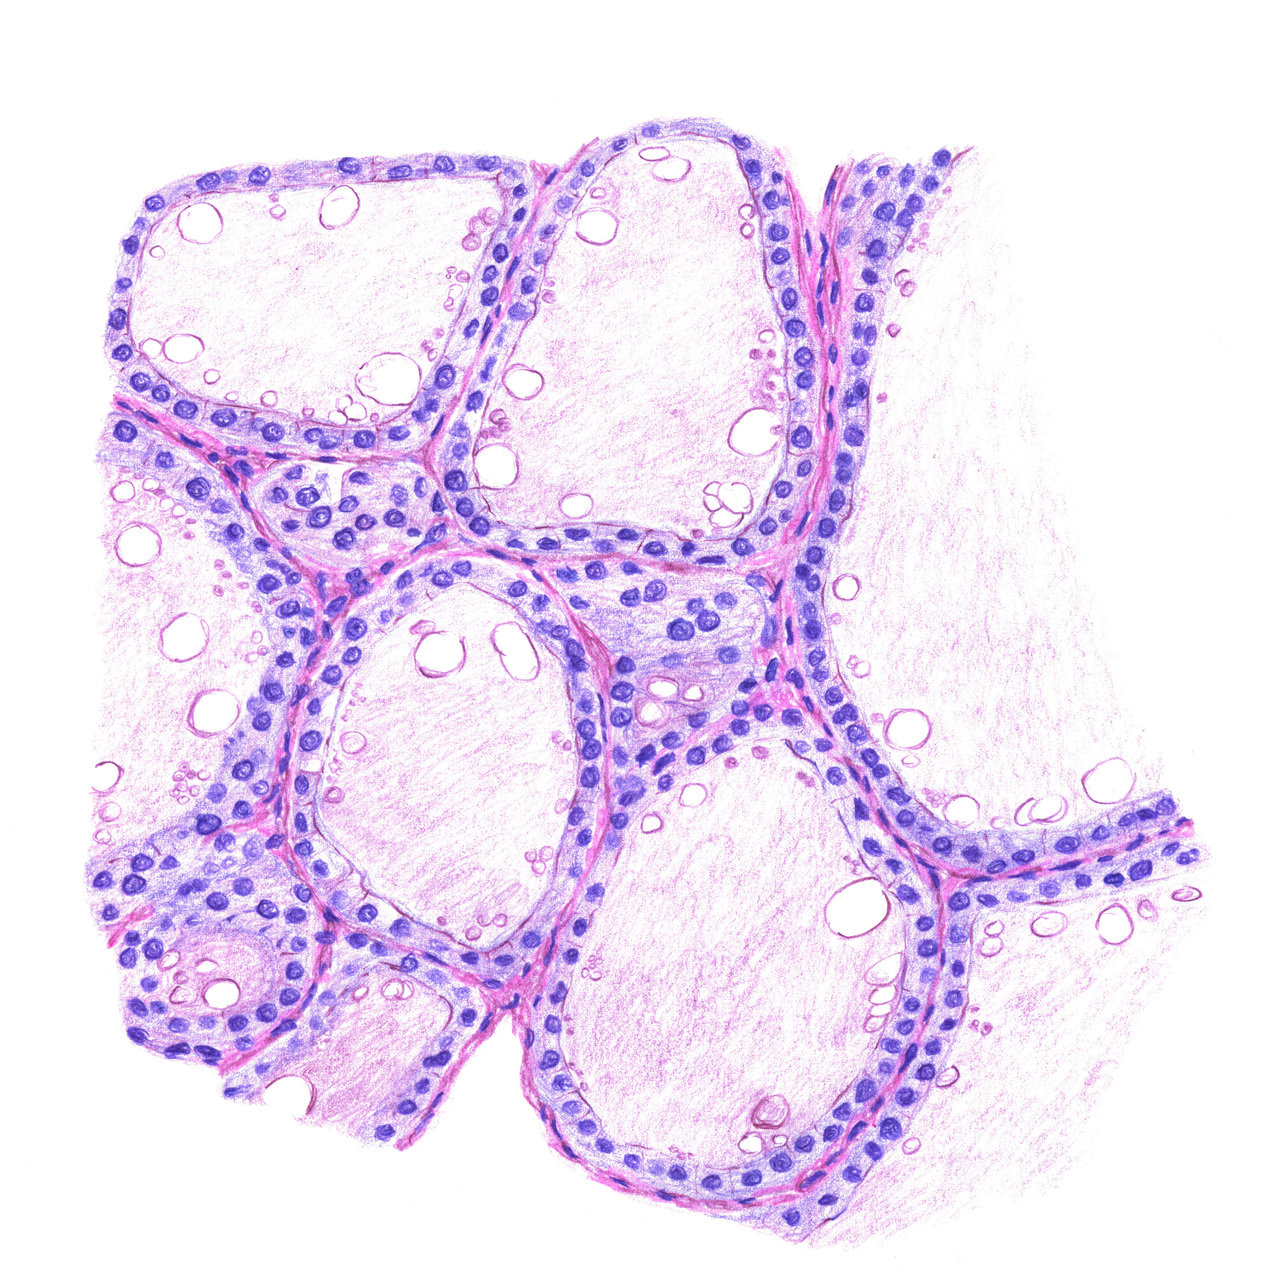 Mikroskopische Zeichnung